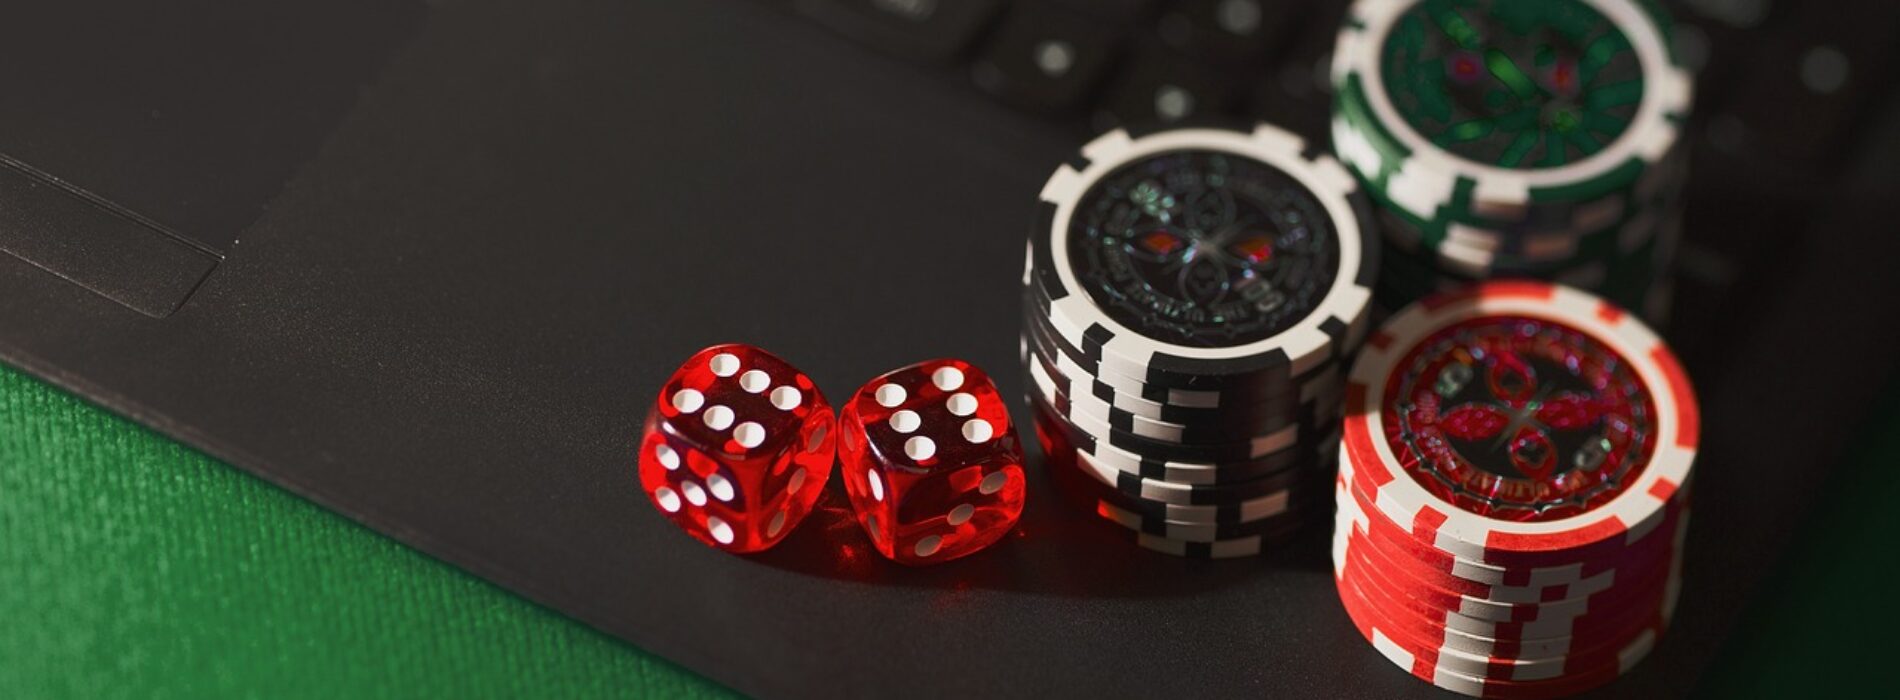 Porady doświadczonych graczy – jak najlepiej wykorzystać możliwości kasyna